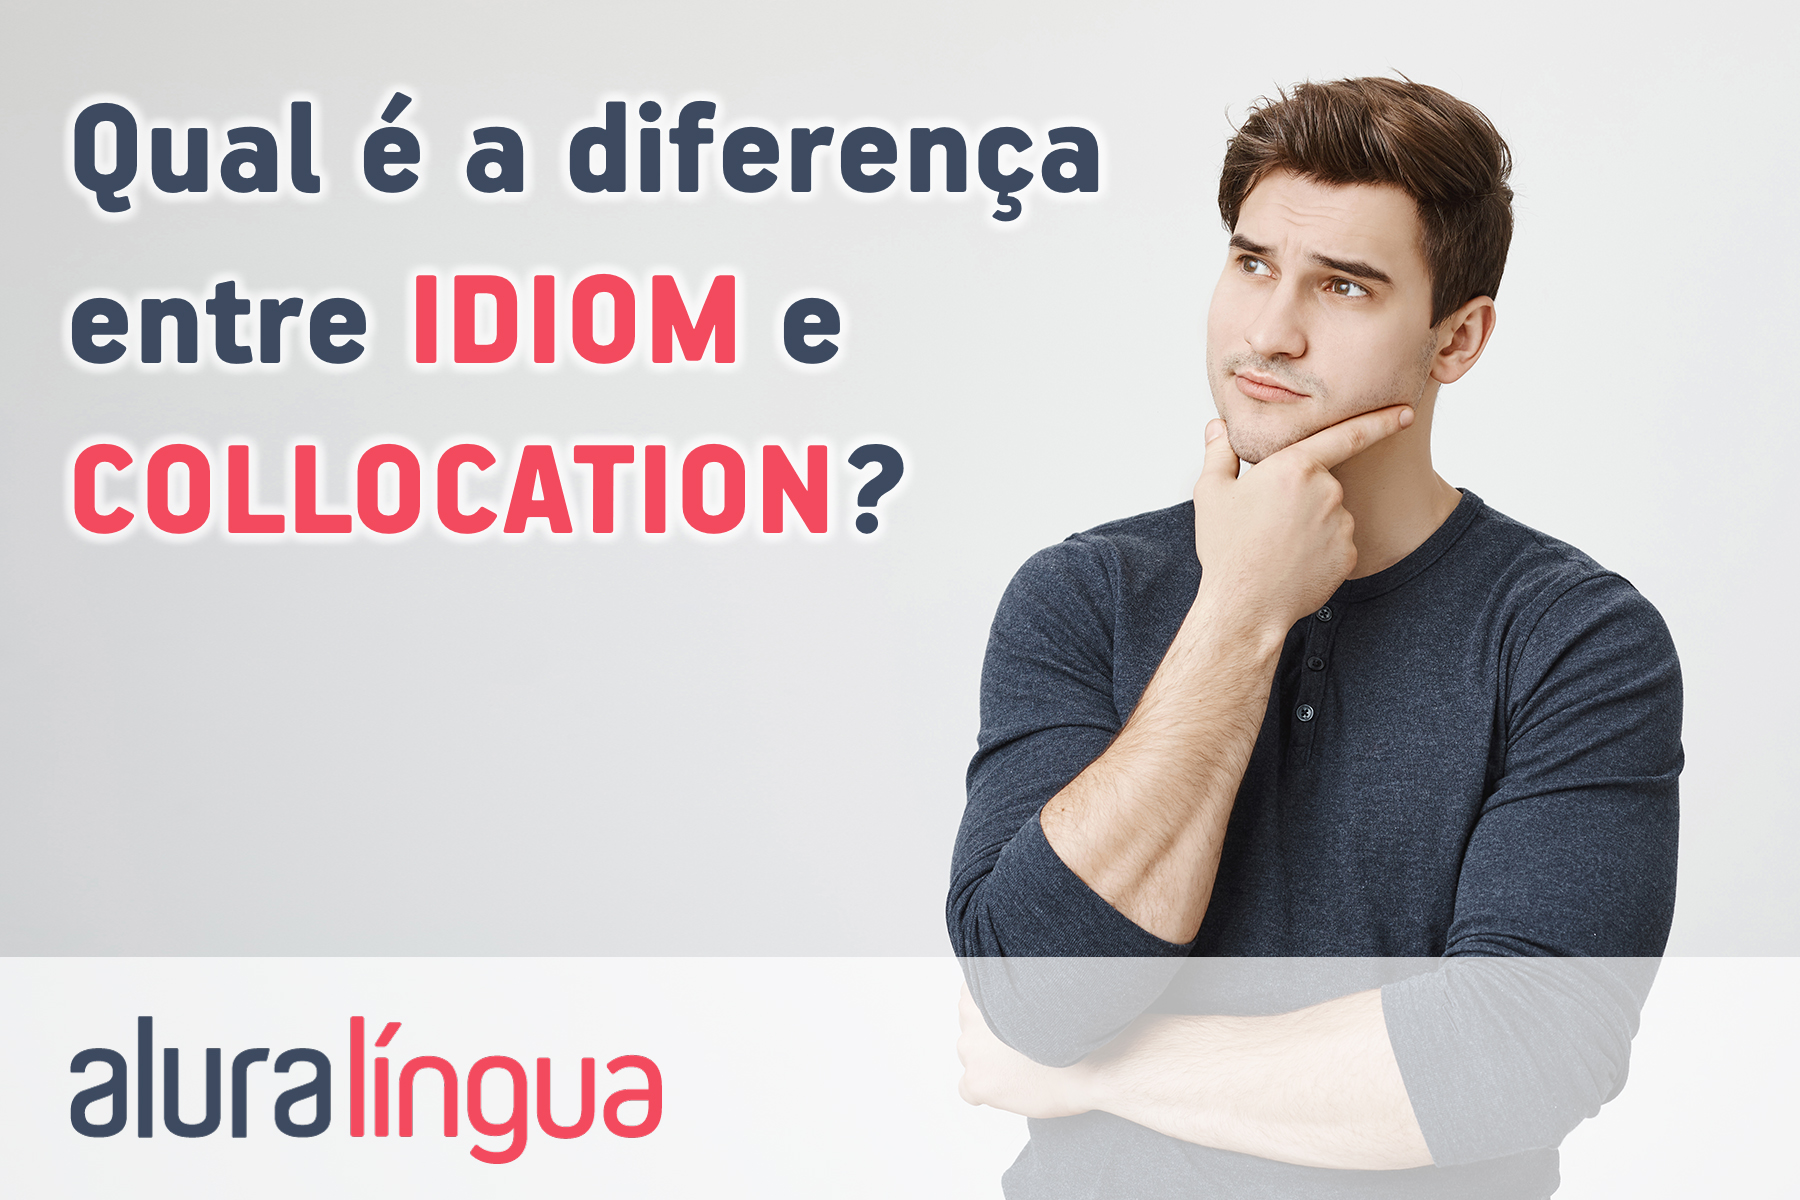 Qual é a diferença entre idiom e collocation #inset